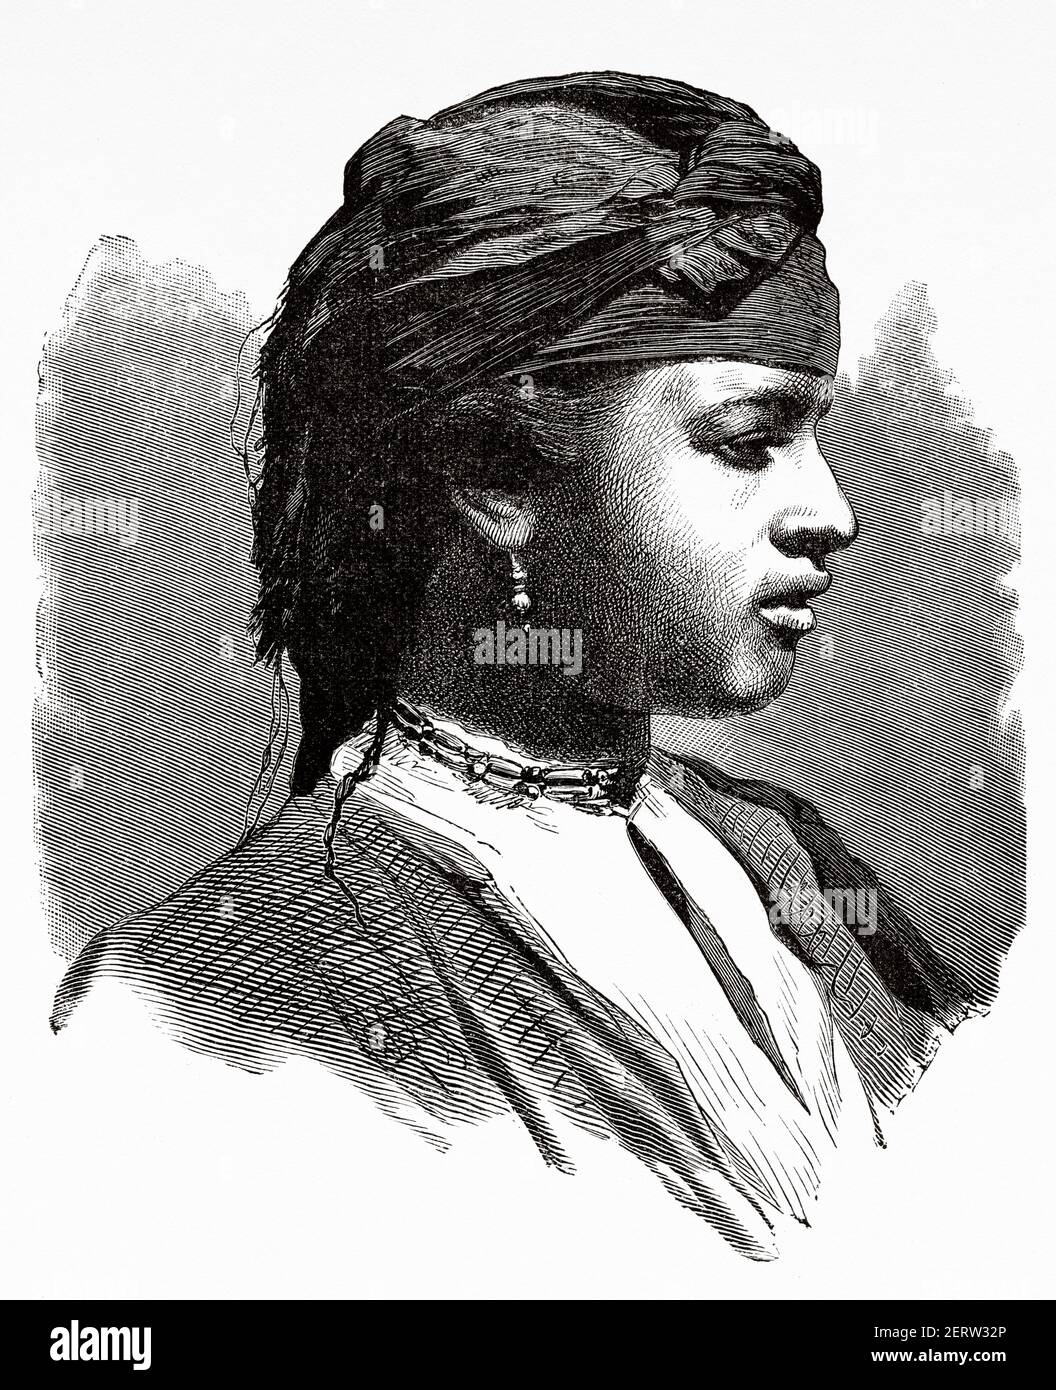 Portrait, femme de Fellah en vêtements traditionnels, Égypte XIXe siècle. Illustration gravée du XIXe siècle, El Mundo Ilustrado 1880 Banque D'Images